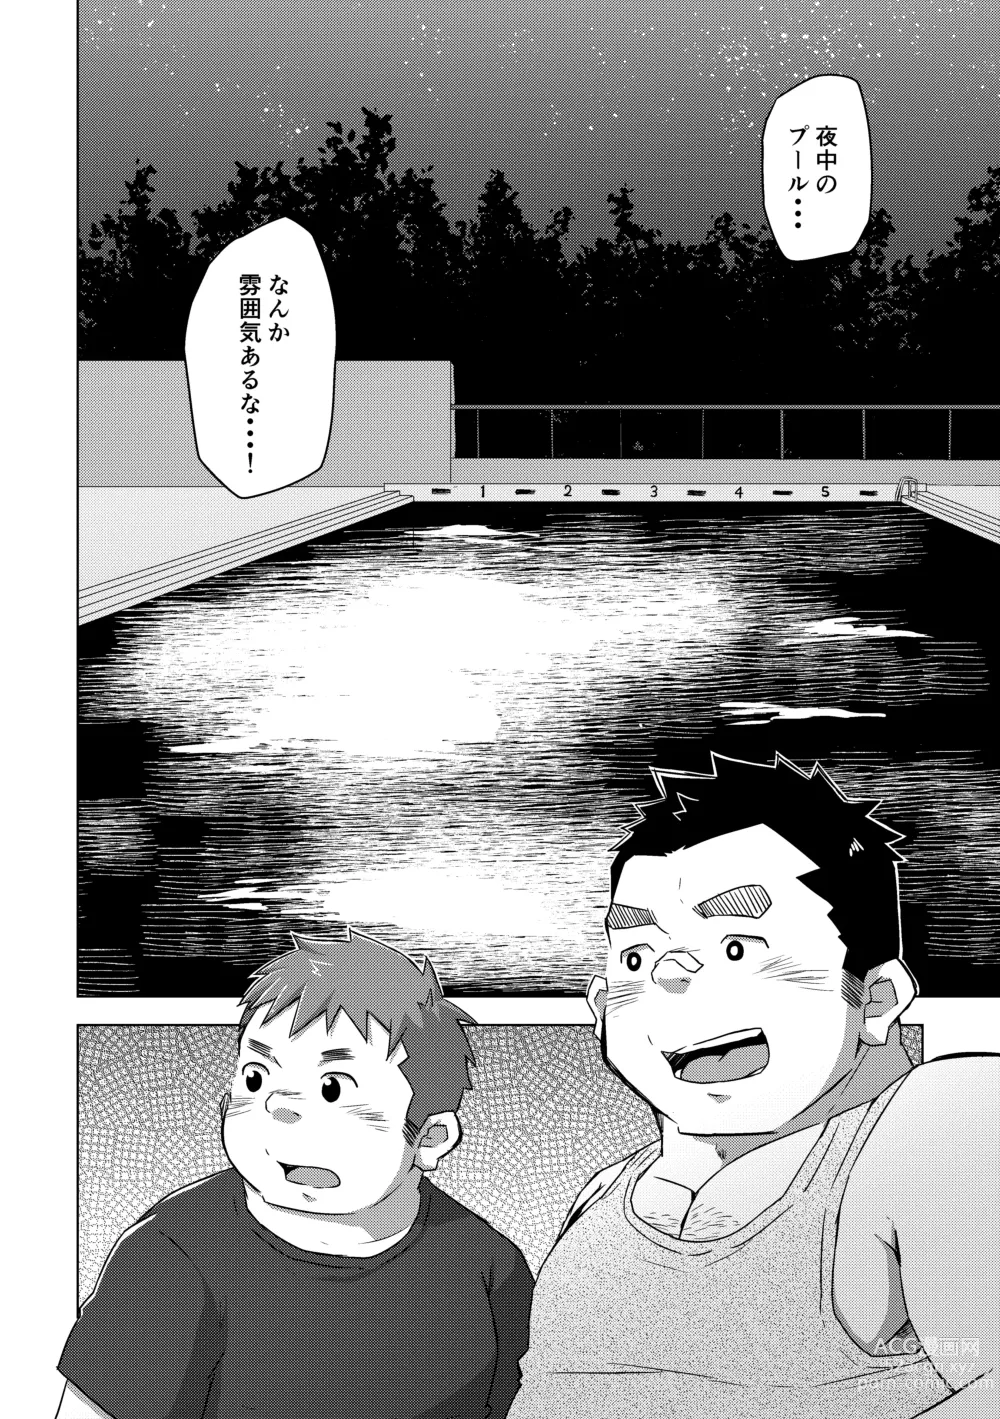 Page 16 of doujinshi Manten no Hoshi 1